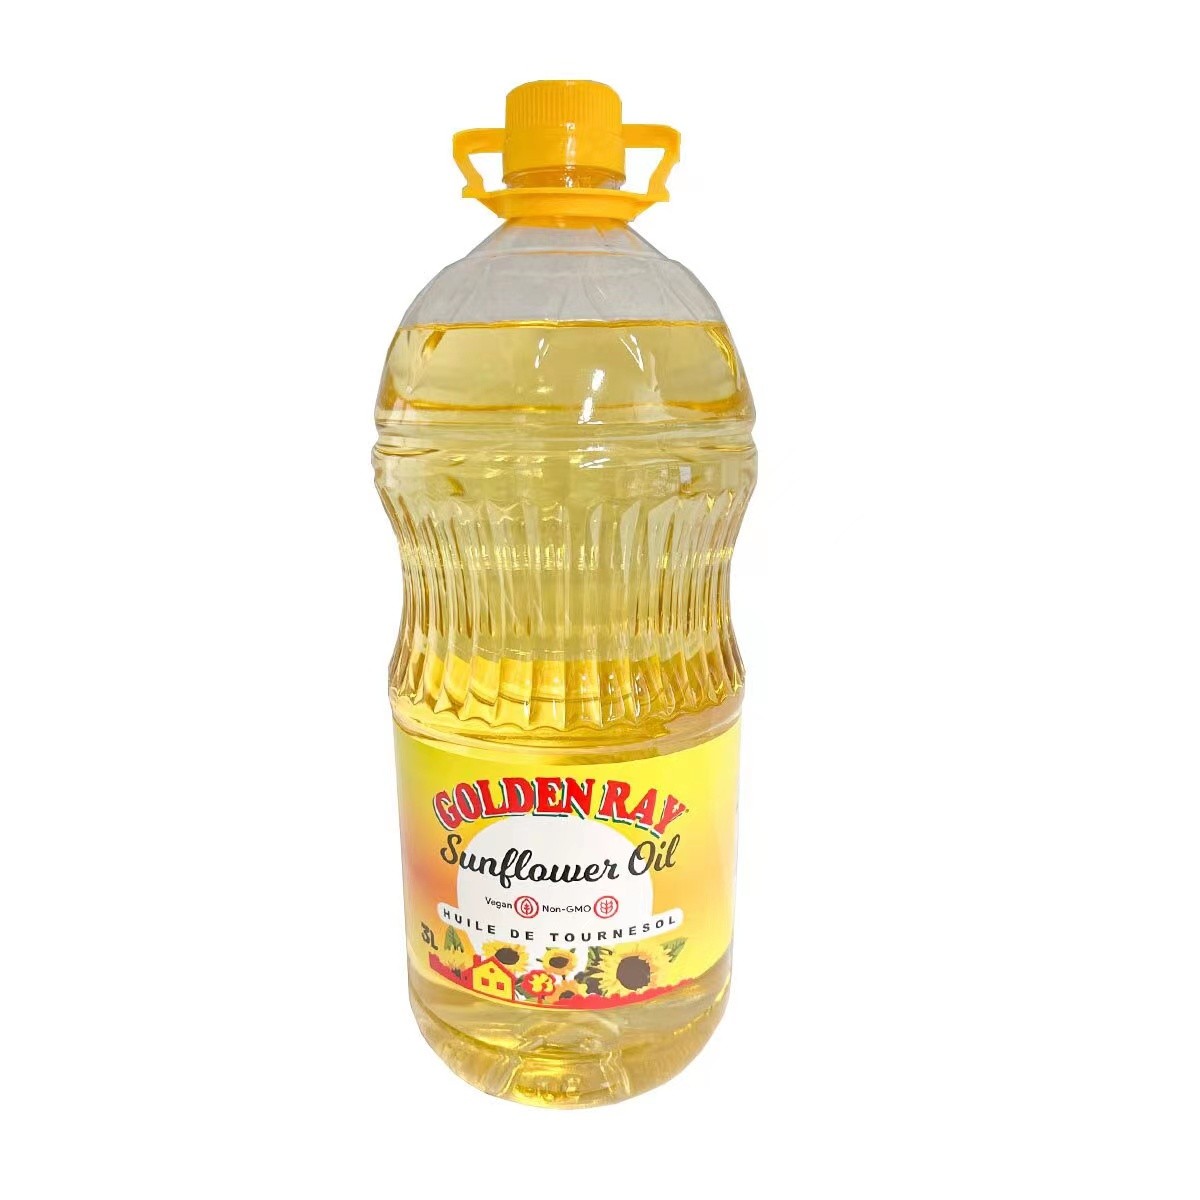 golden-ray-sunflower-oil-3l